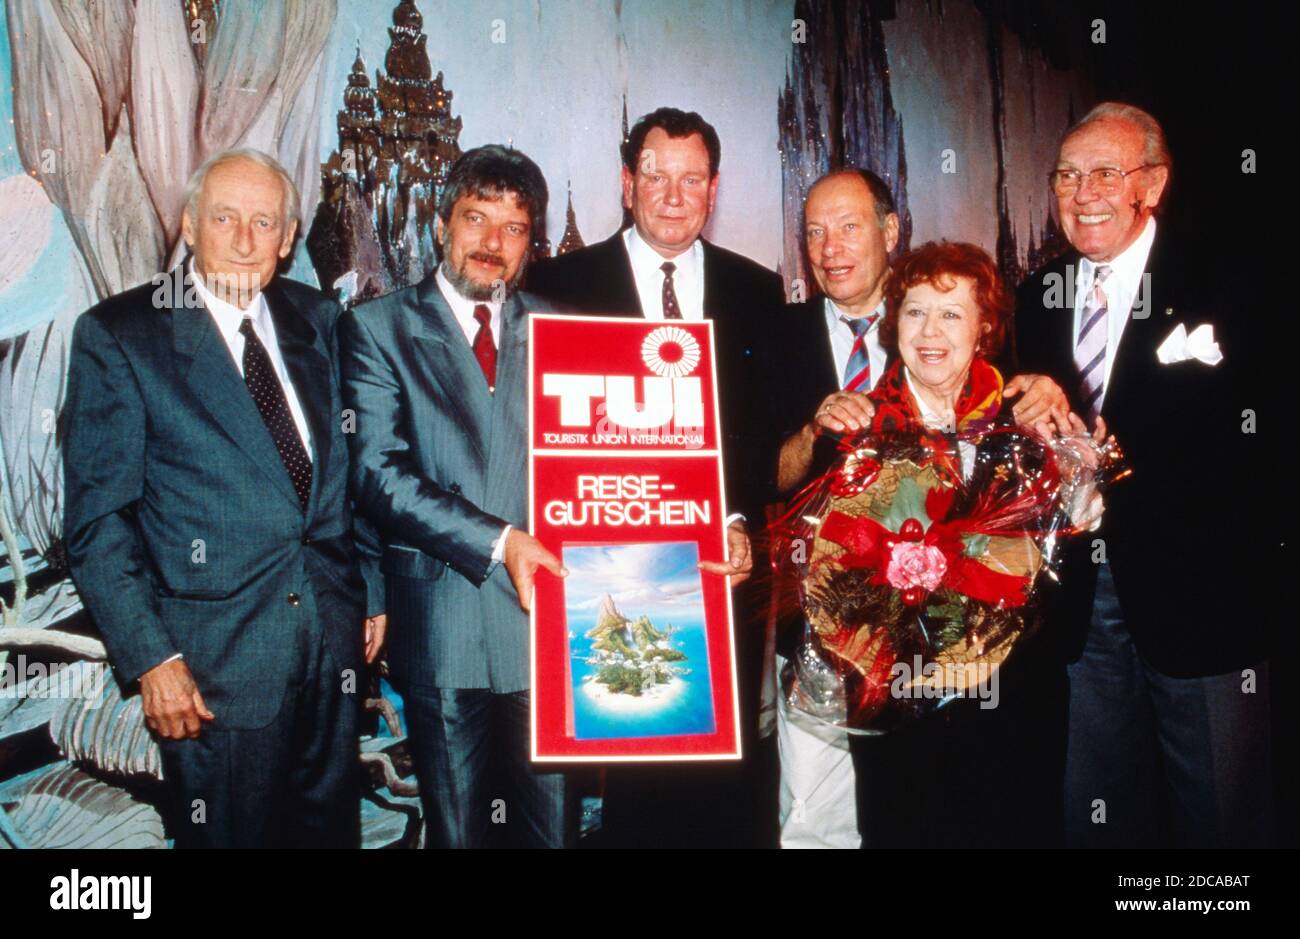 Heinz Haber, TUI-Mitarbeiter Guntram Gudschun, Fred Kraus (Vater von Peter), Regisseur Jürgen Roland und Brigitte Mira im Traumtheater Salome, Deutschland 1989. Stock Photo